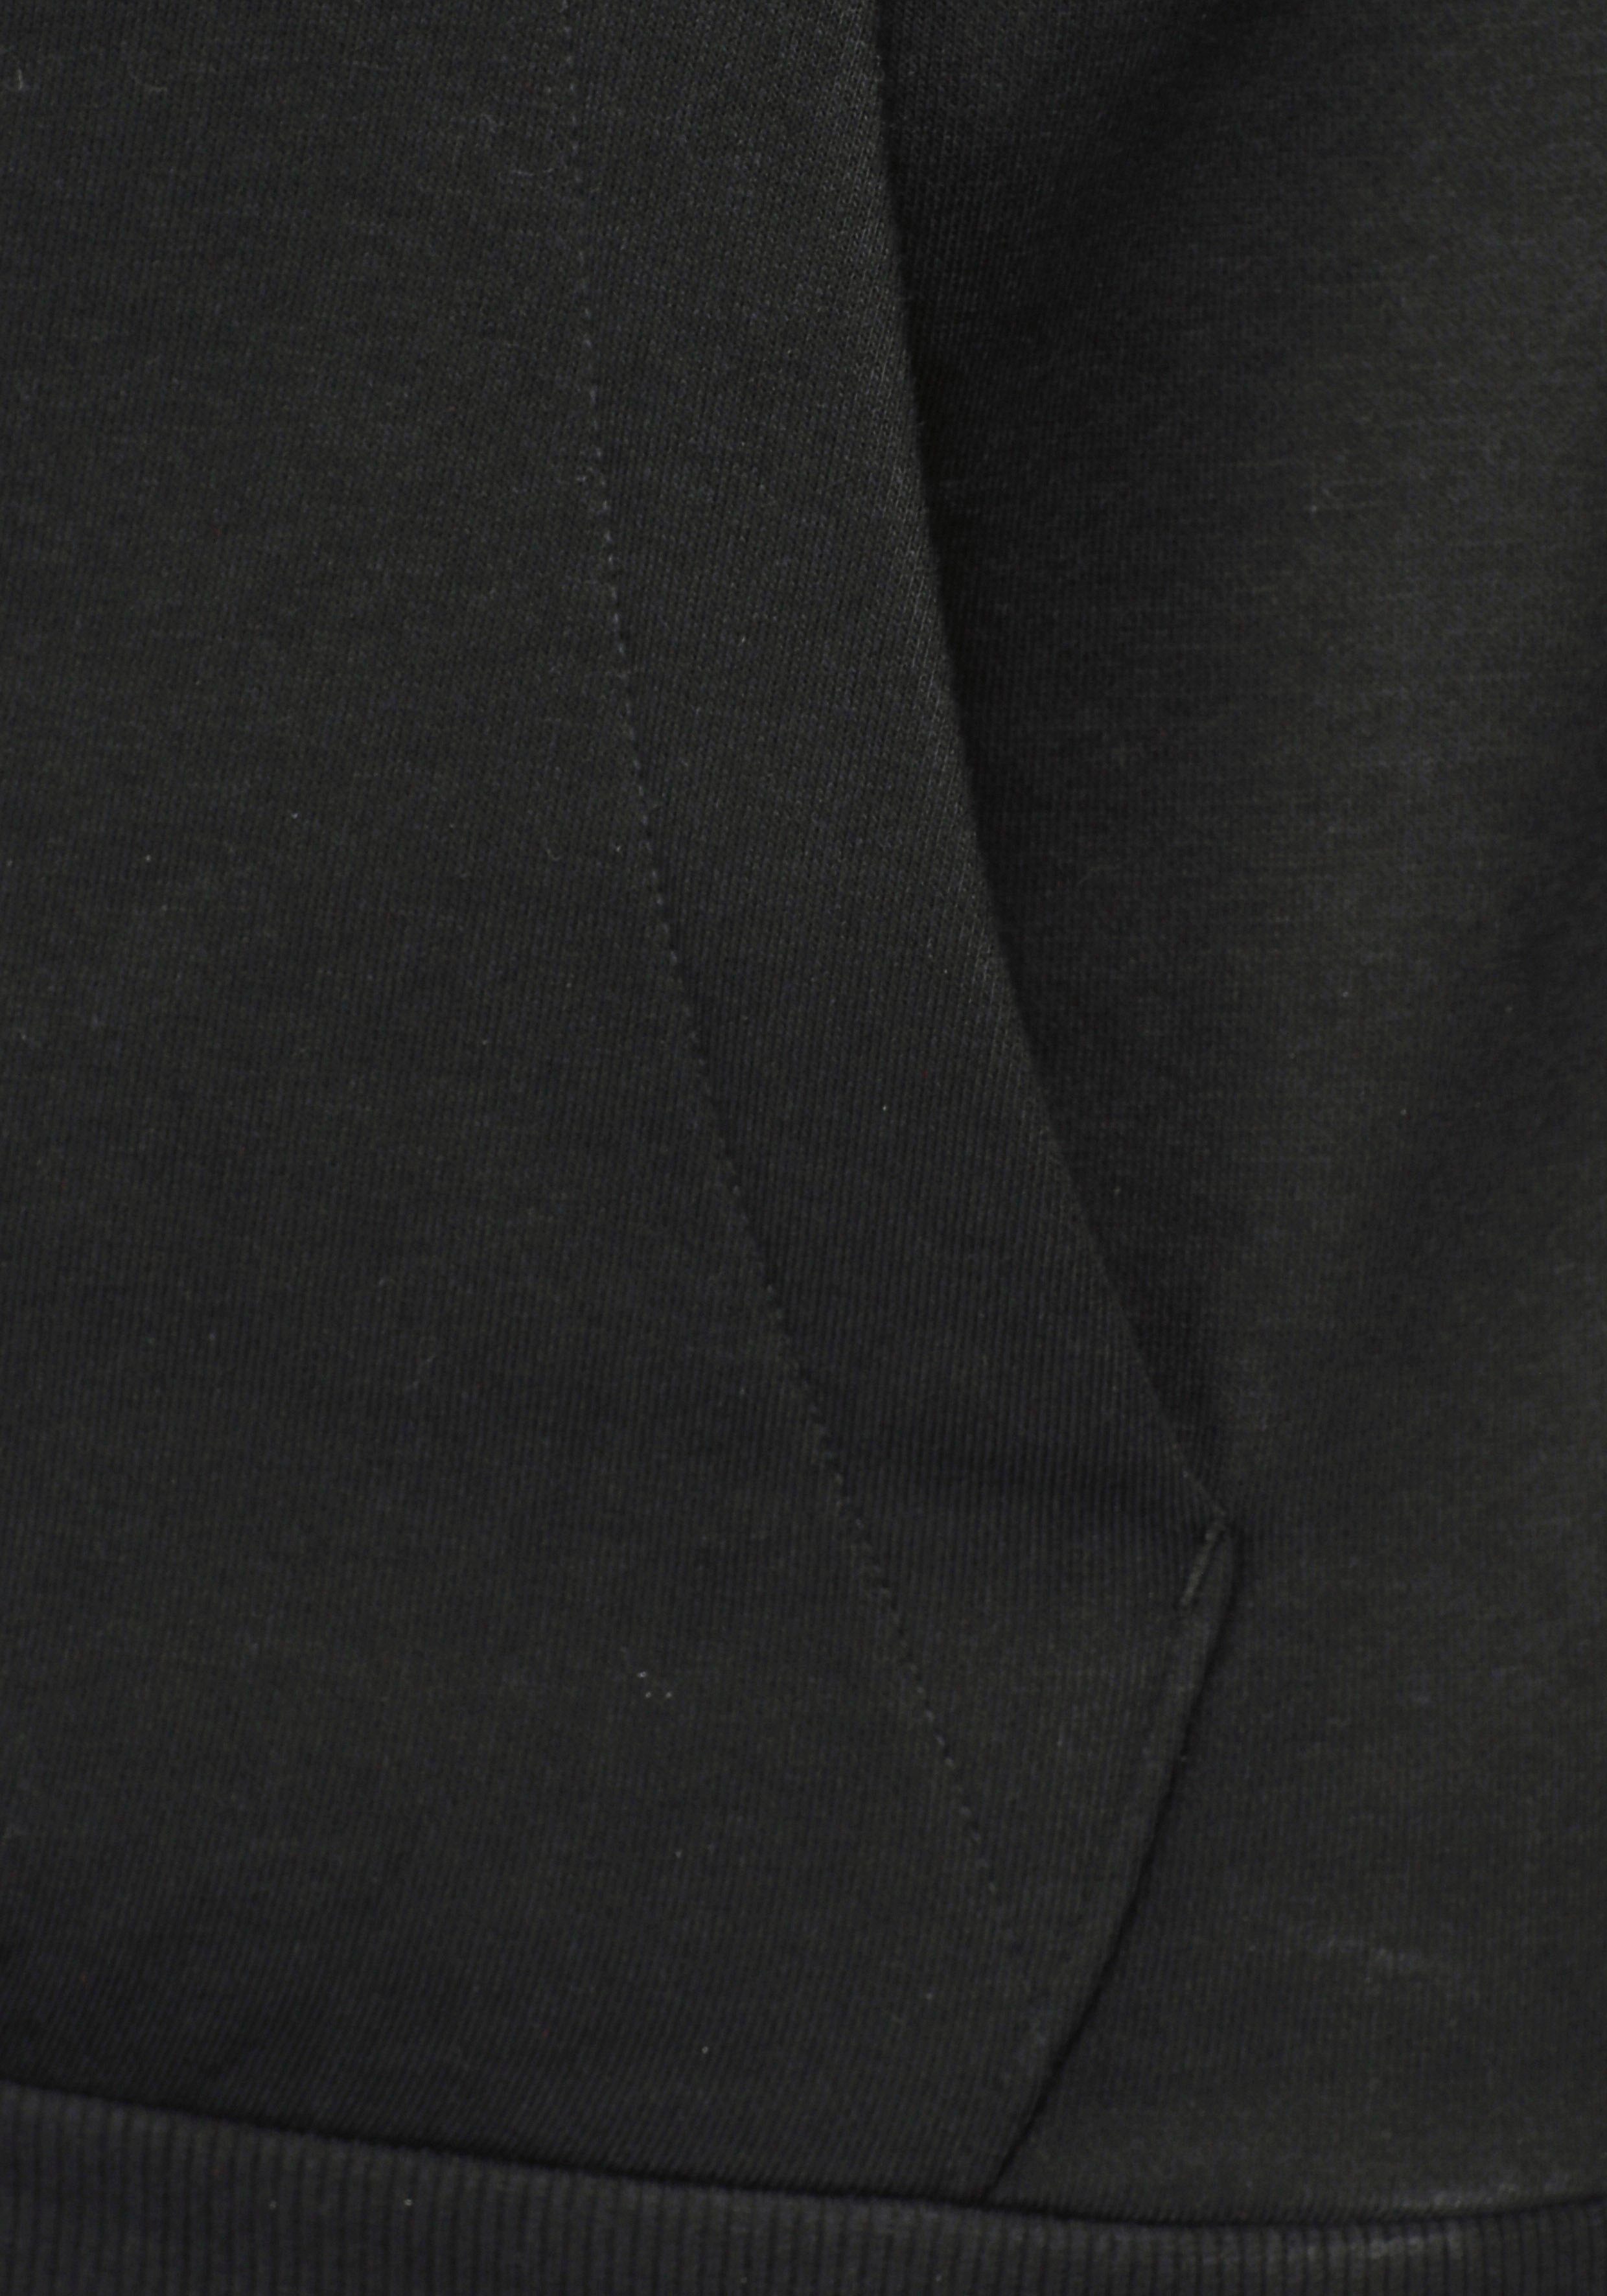 White ESSENTIALS HOODIE / adidas FLEECE Black Sportswear Sweatshirt 3STREIFEN